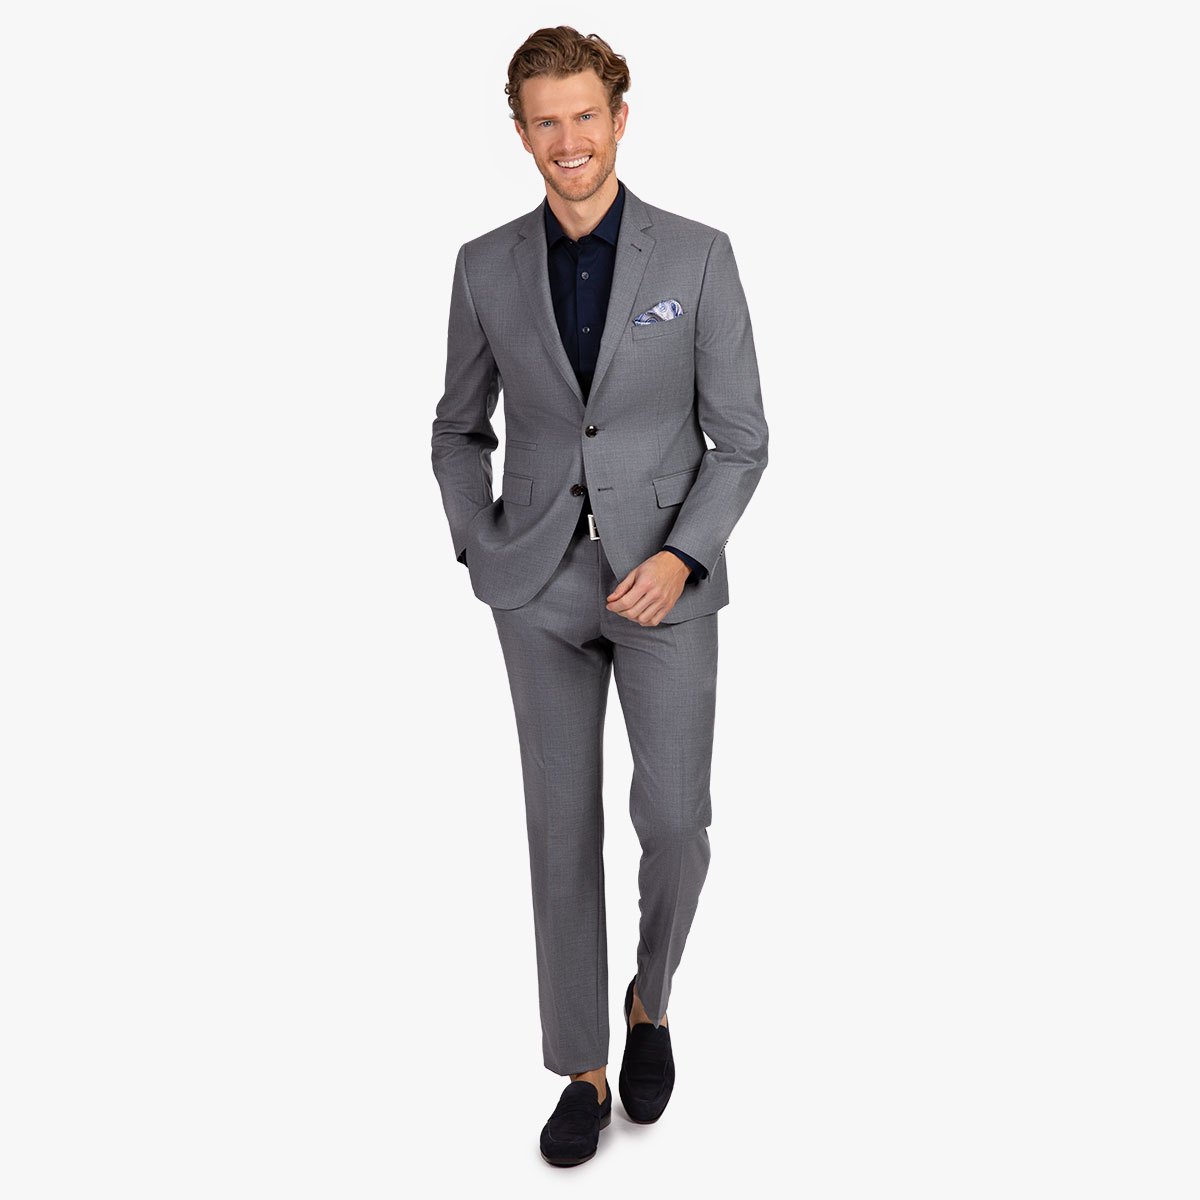 Business-Outfit in grau für Herren